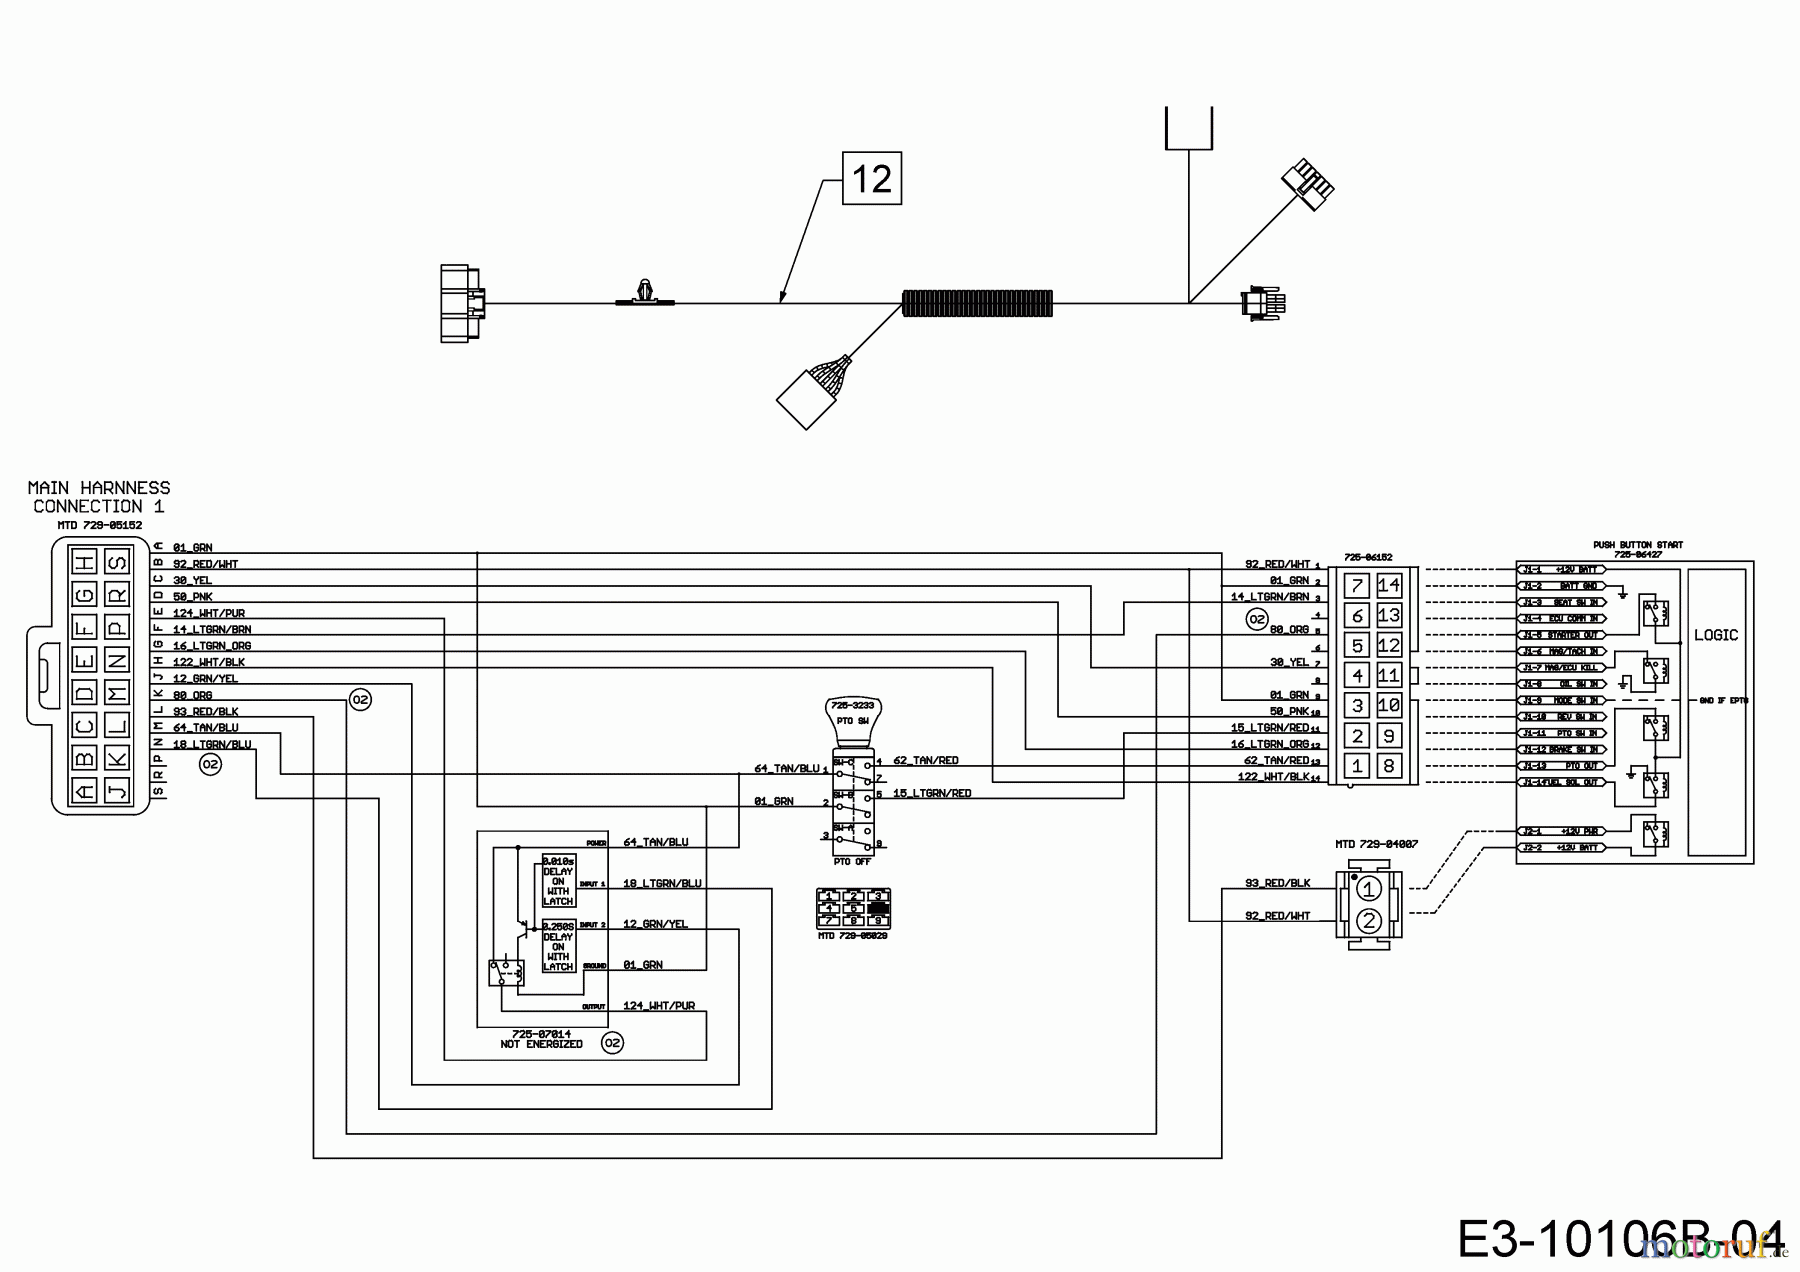  Wolf-Garten Lawn tractors 106.185 H 13BLA1VR650  (2018) Wiring diagram dashboard